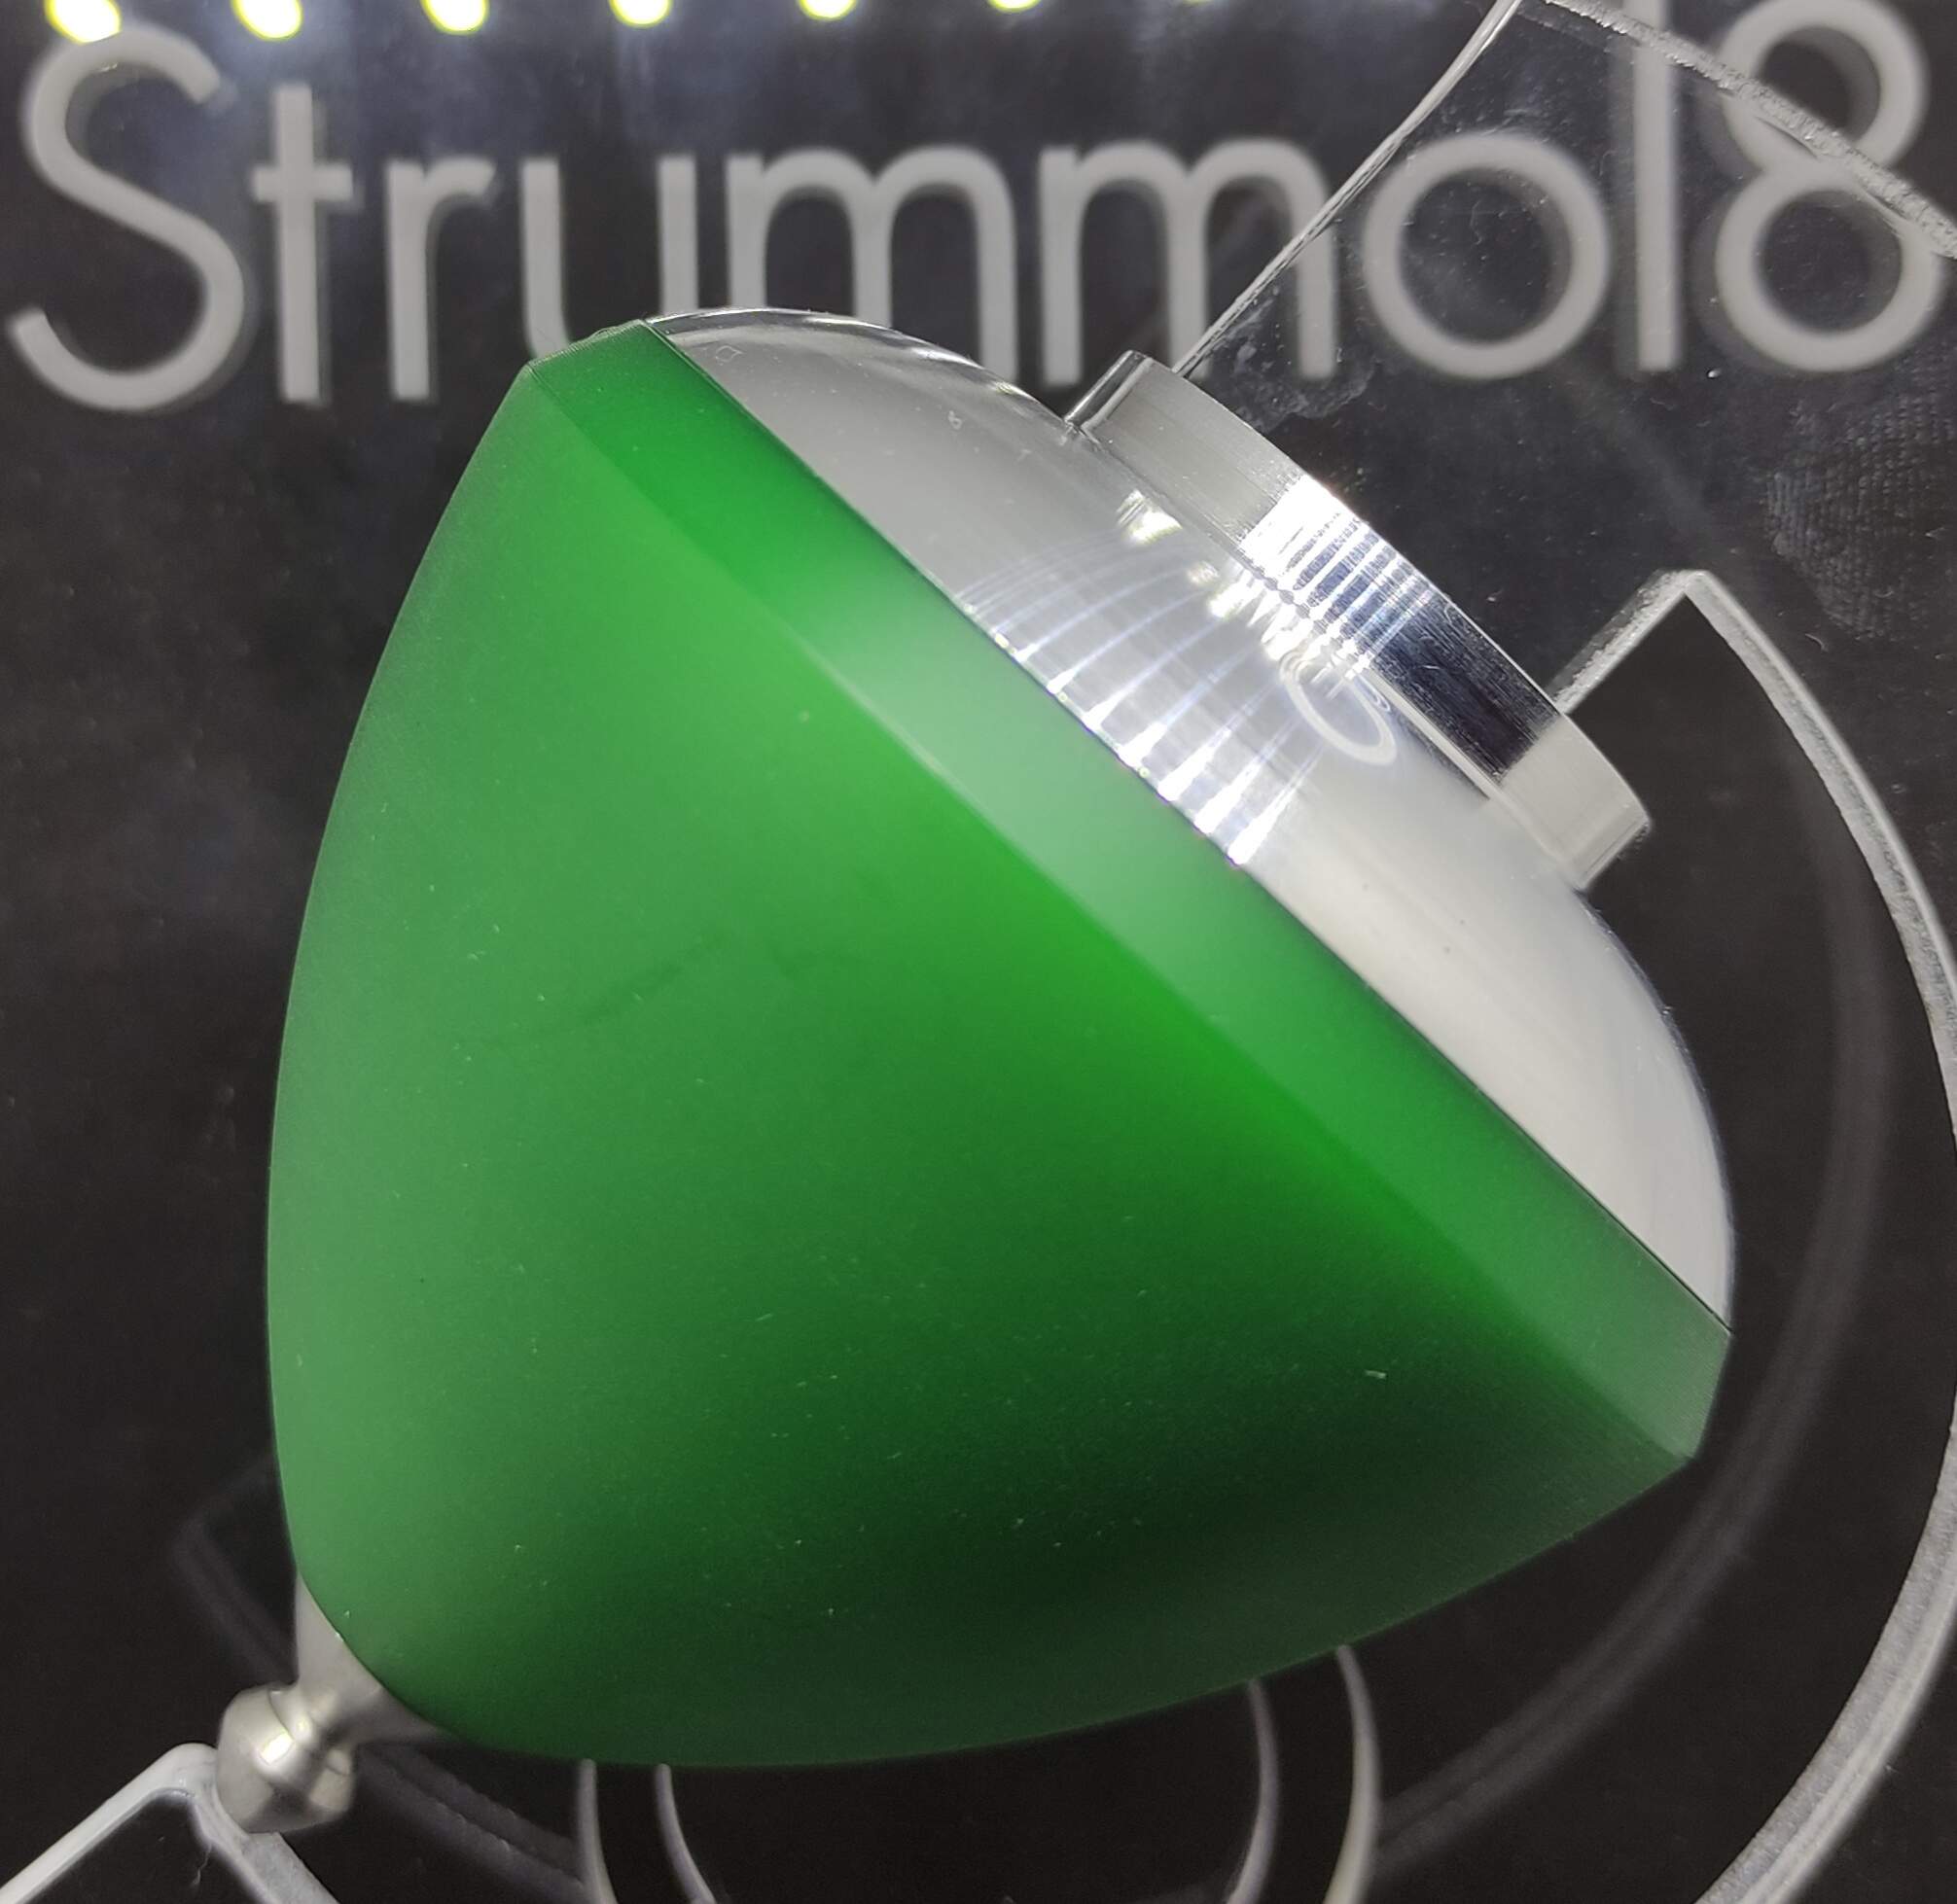 Strummol8